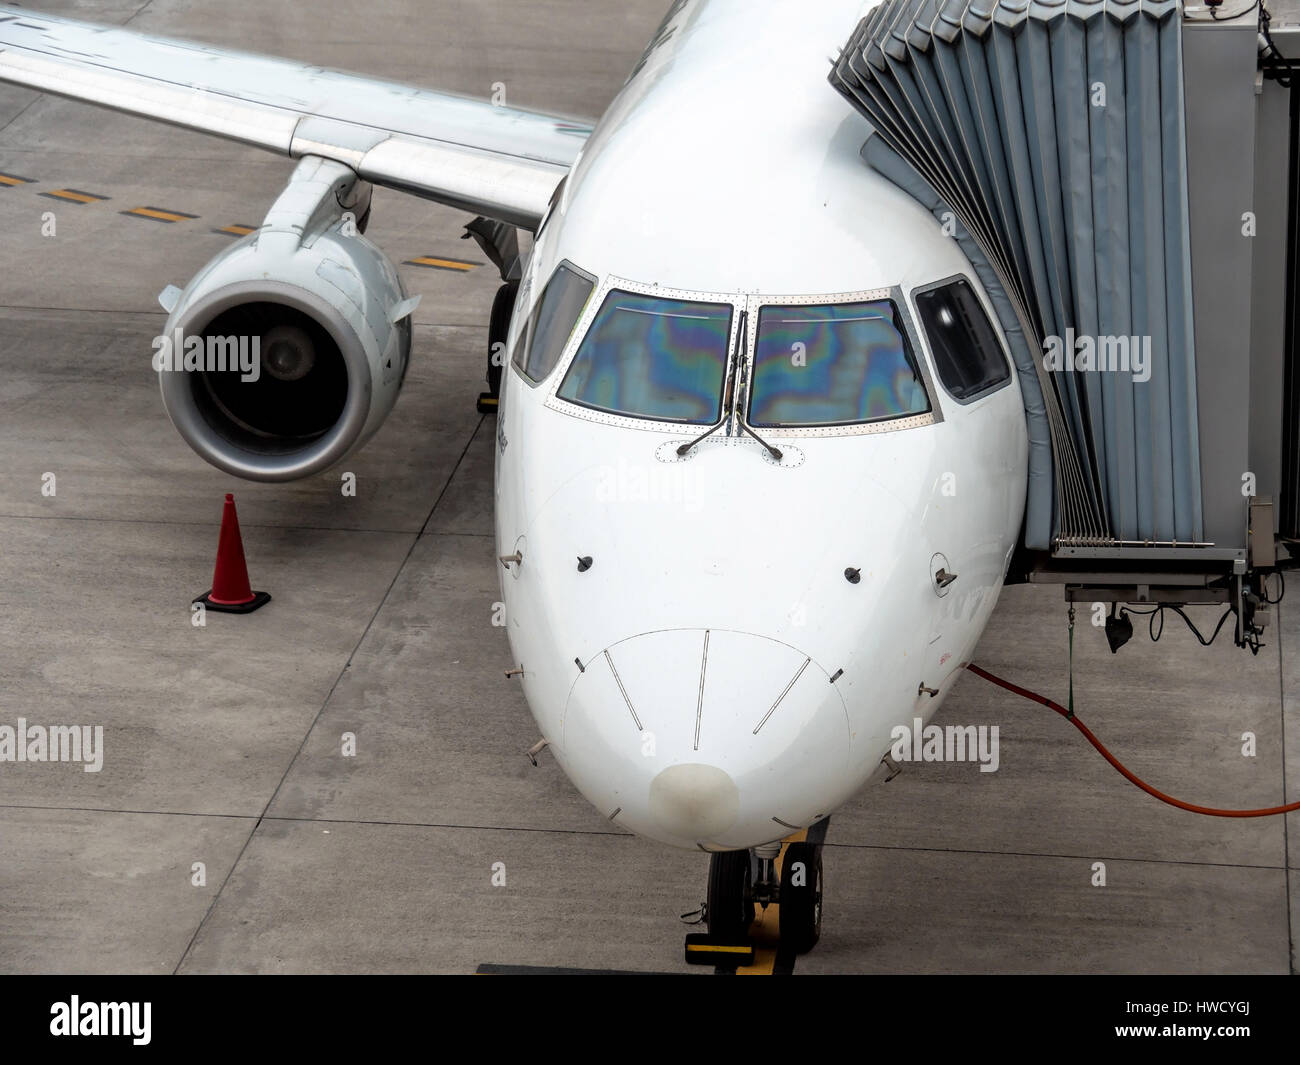 An airplane is docked at an airport, Ein Flugzeug ist an einem Flughafen angedockt Stock Photo